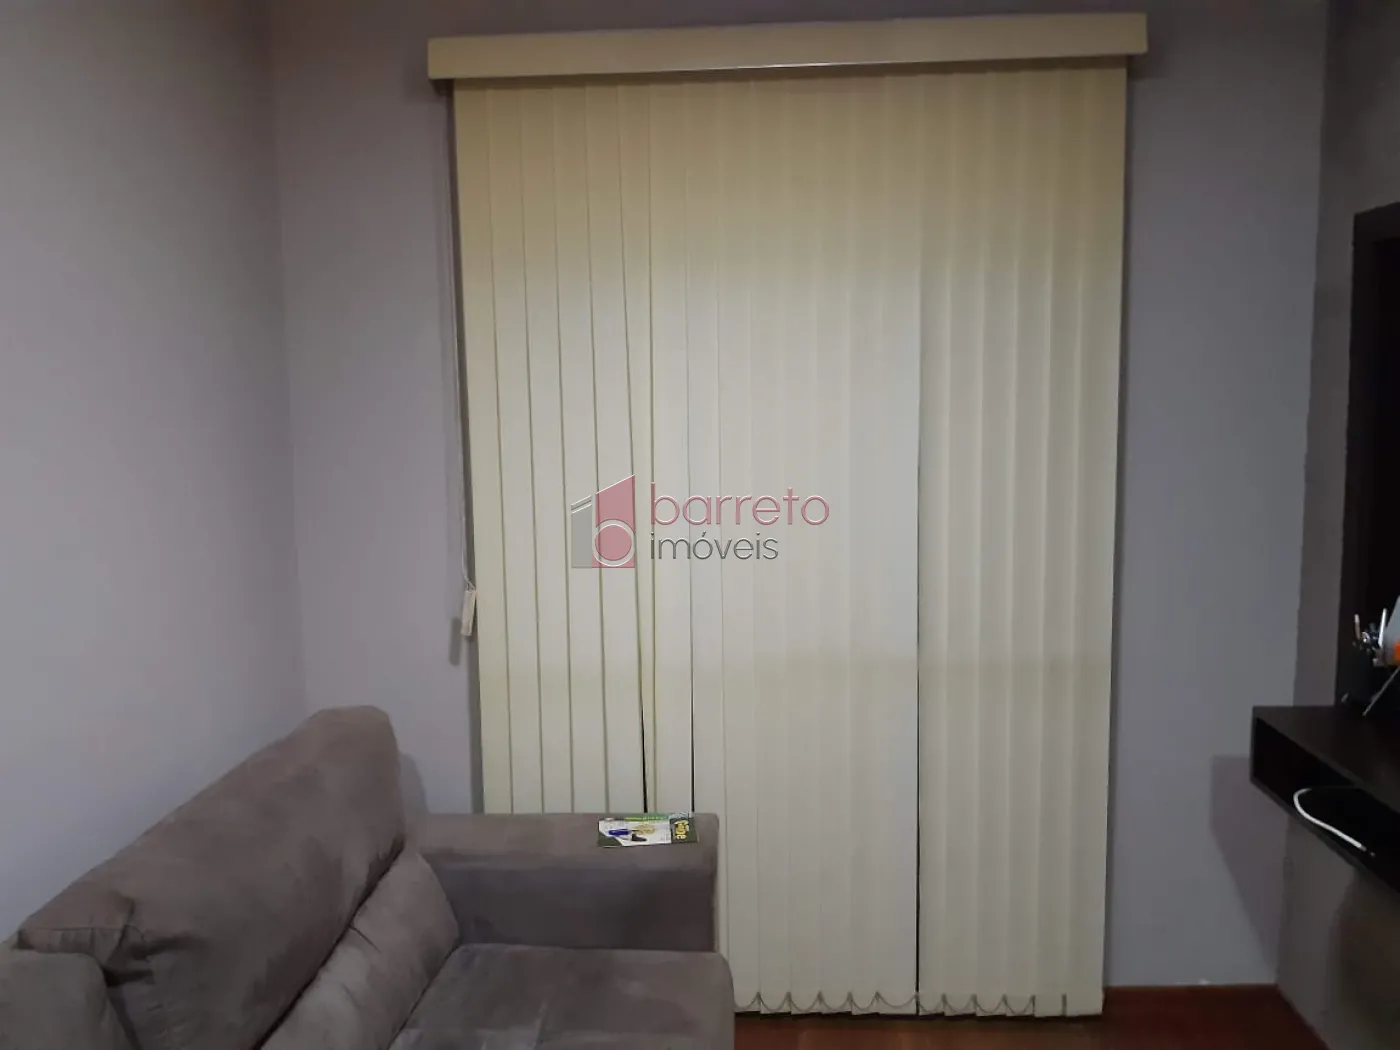 Comprar Apartamento / Padrão em Jundiaí R$ 260.000,00 - Foto 3